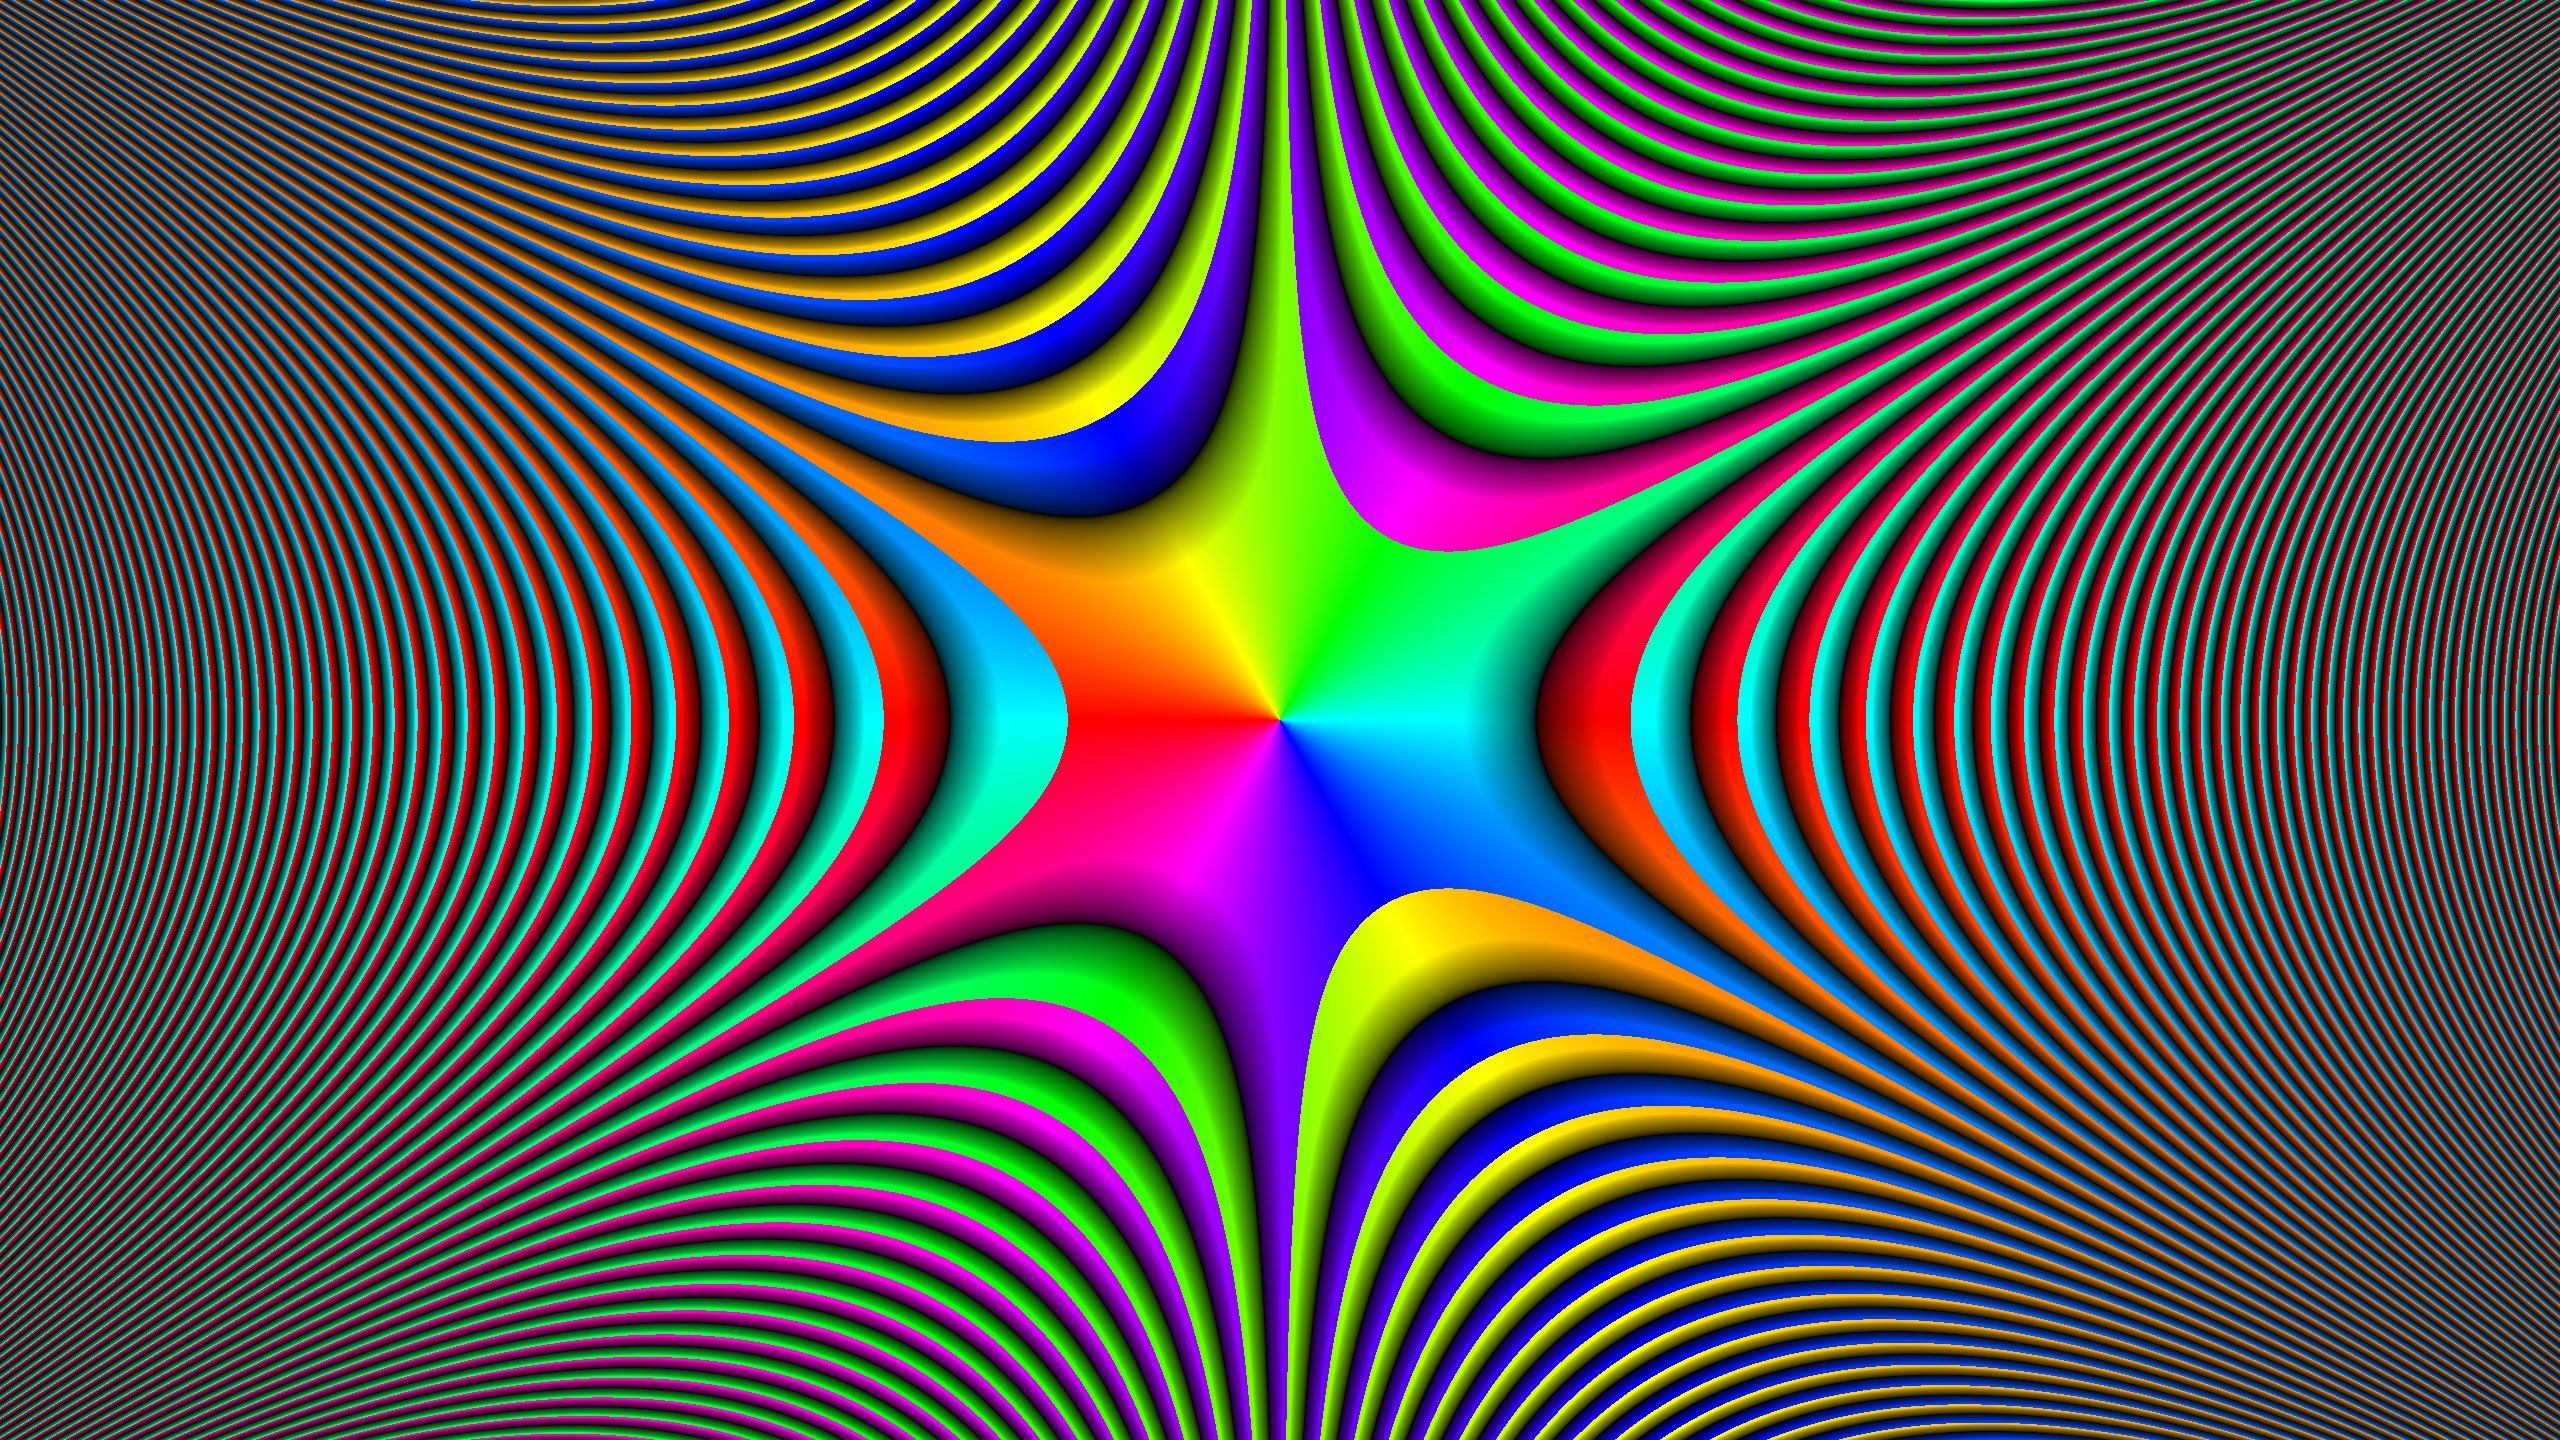 Optical illusion wallpaper, Desktop .com